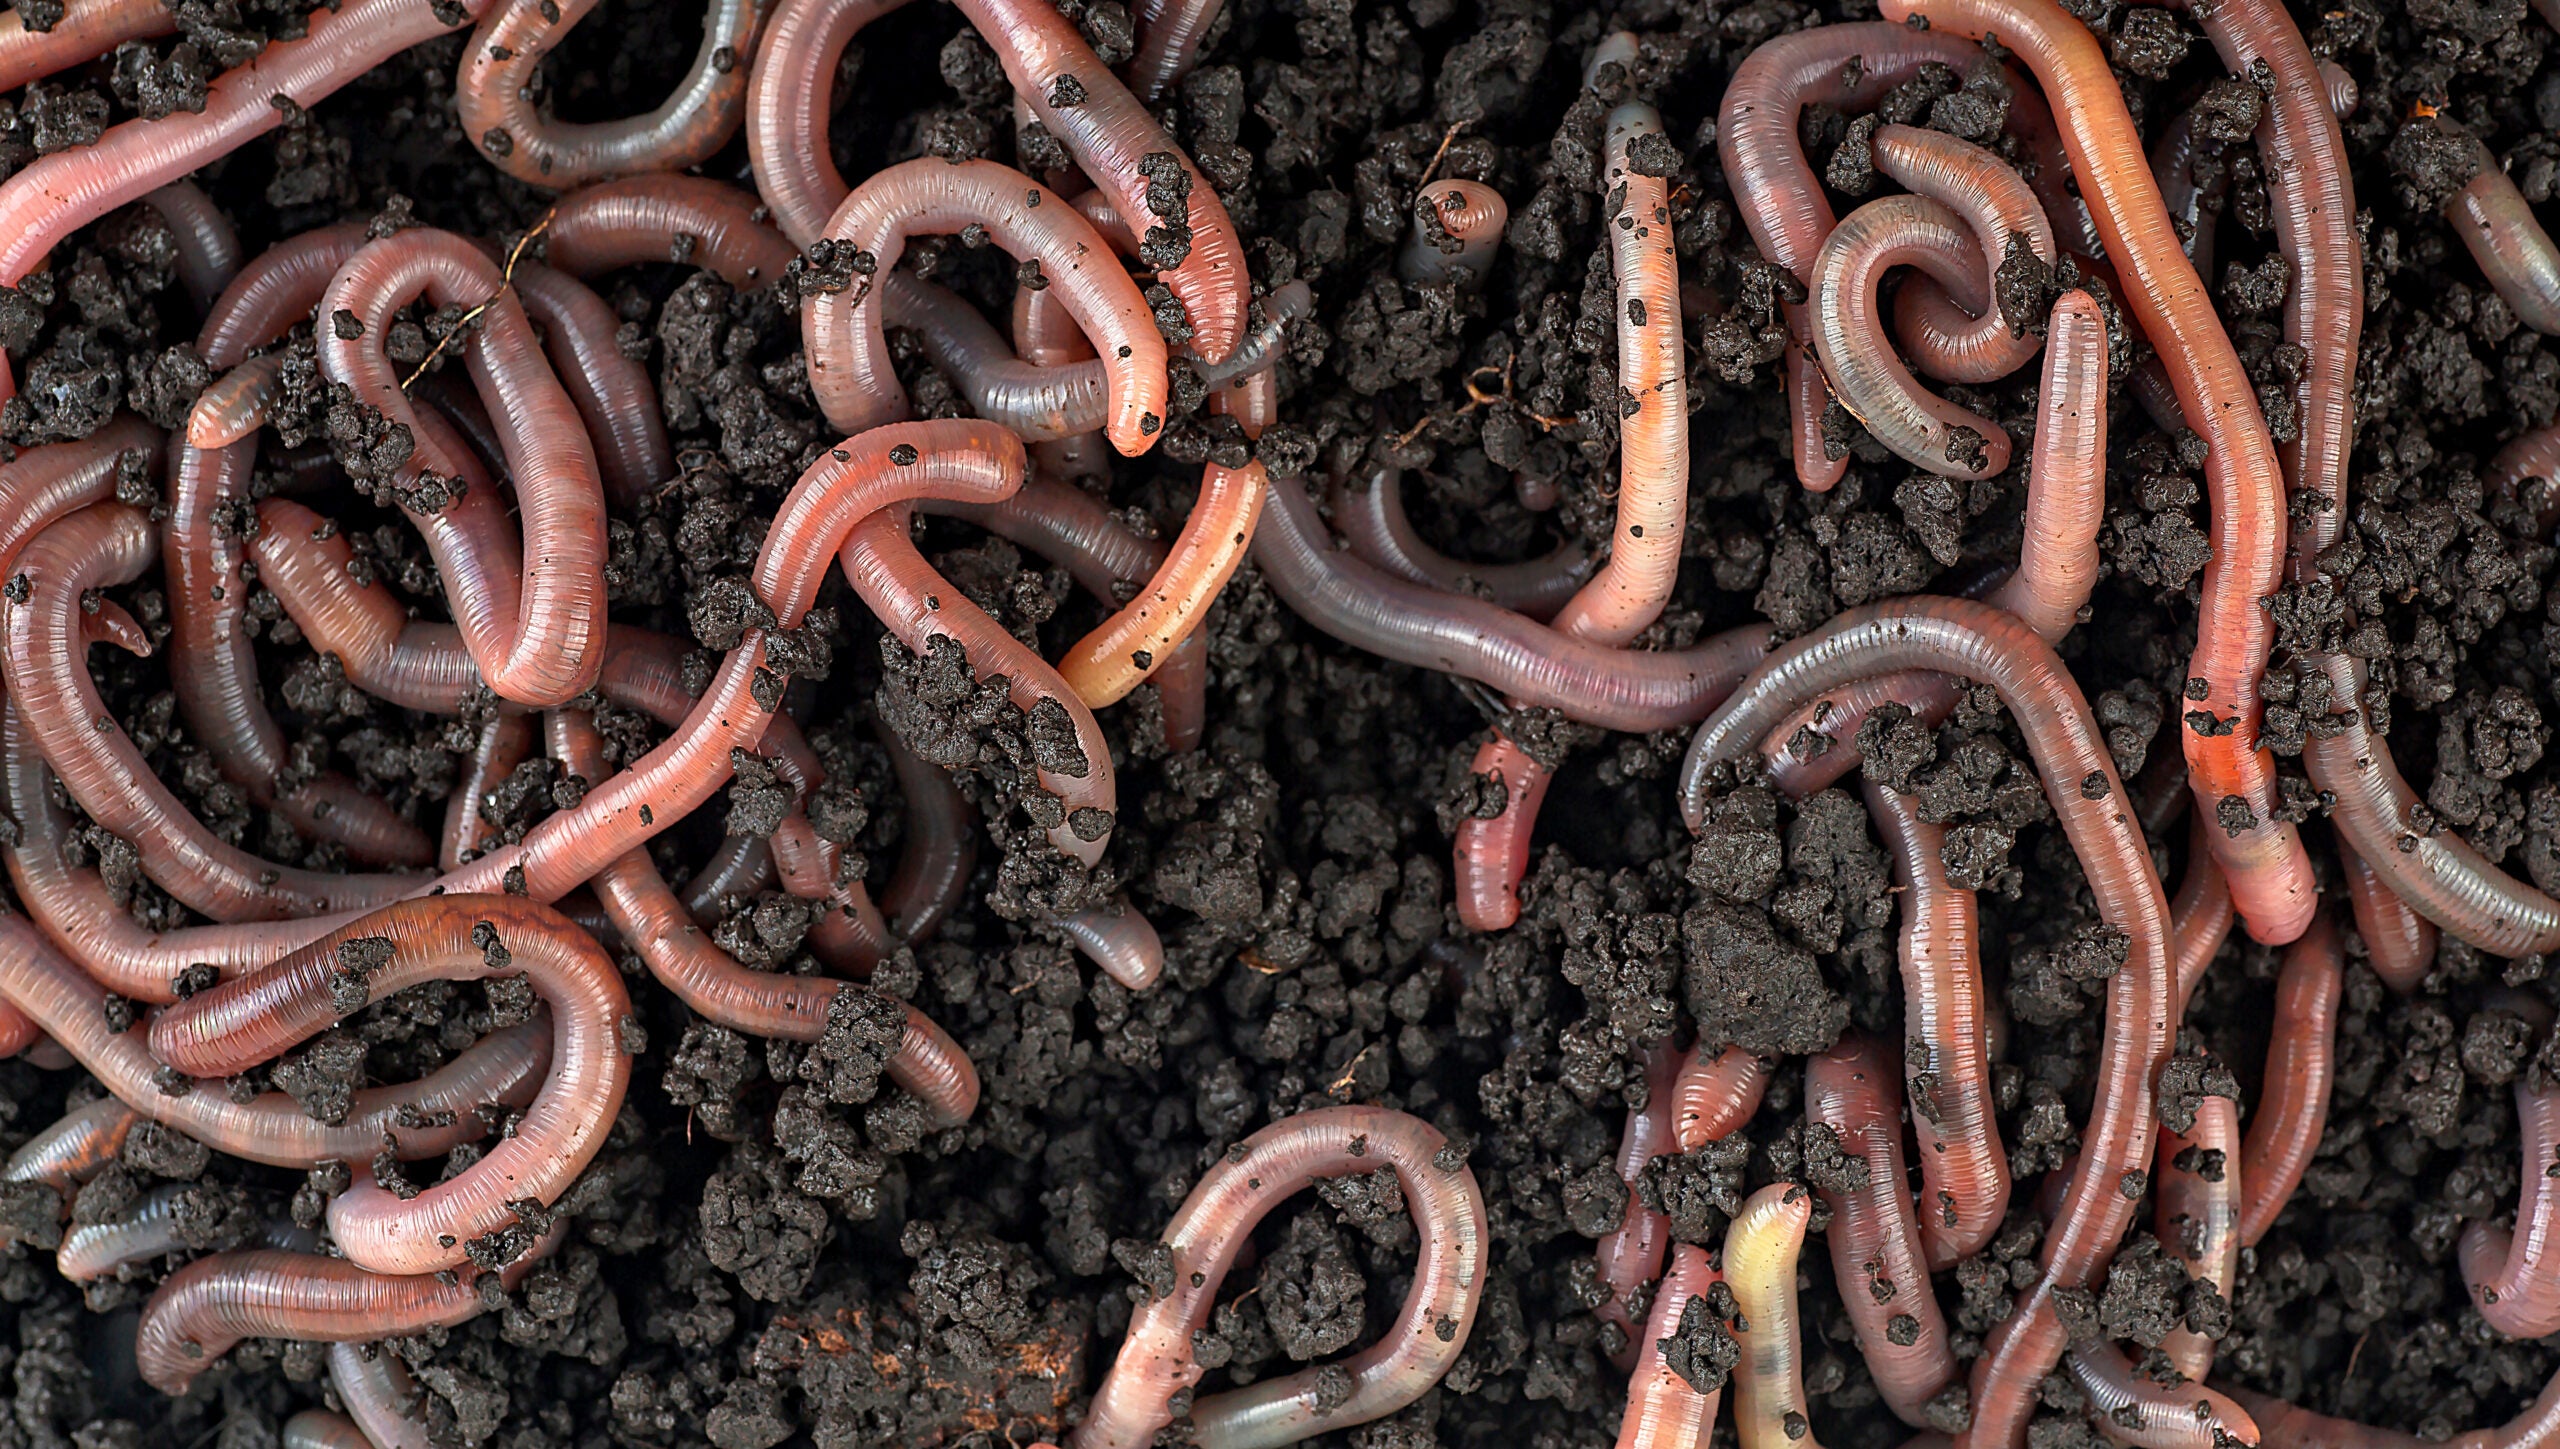 A closeup of garden worms in dirt